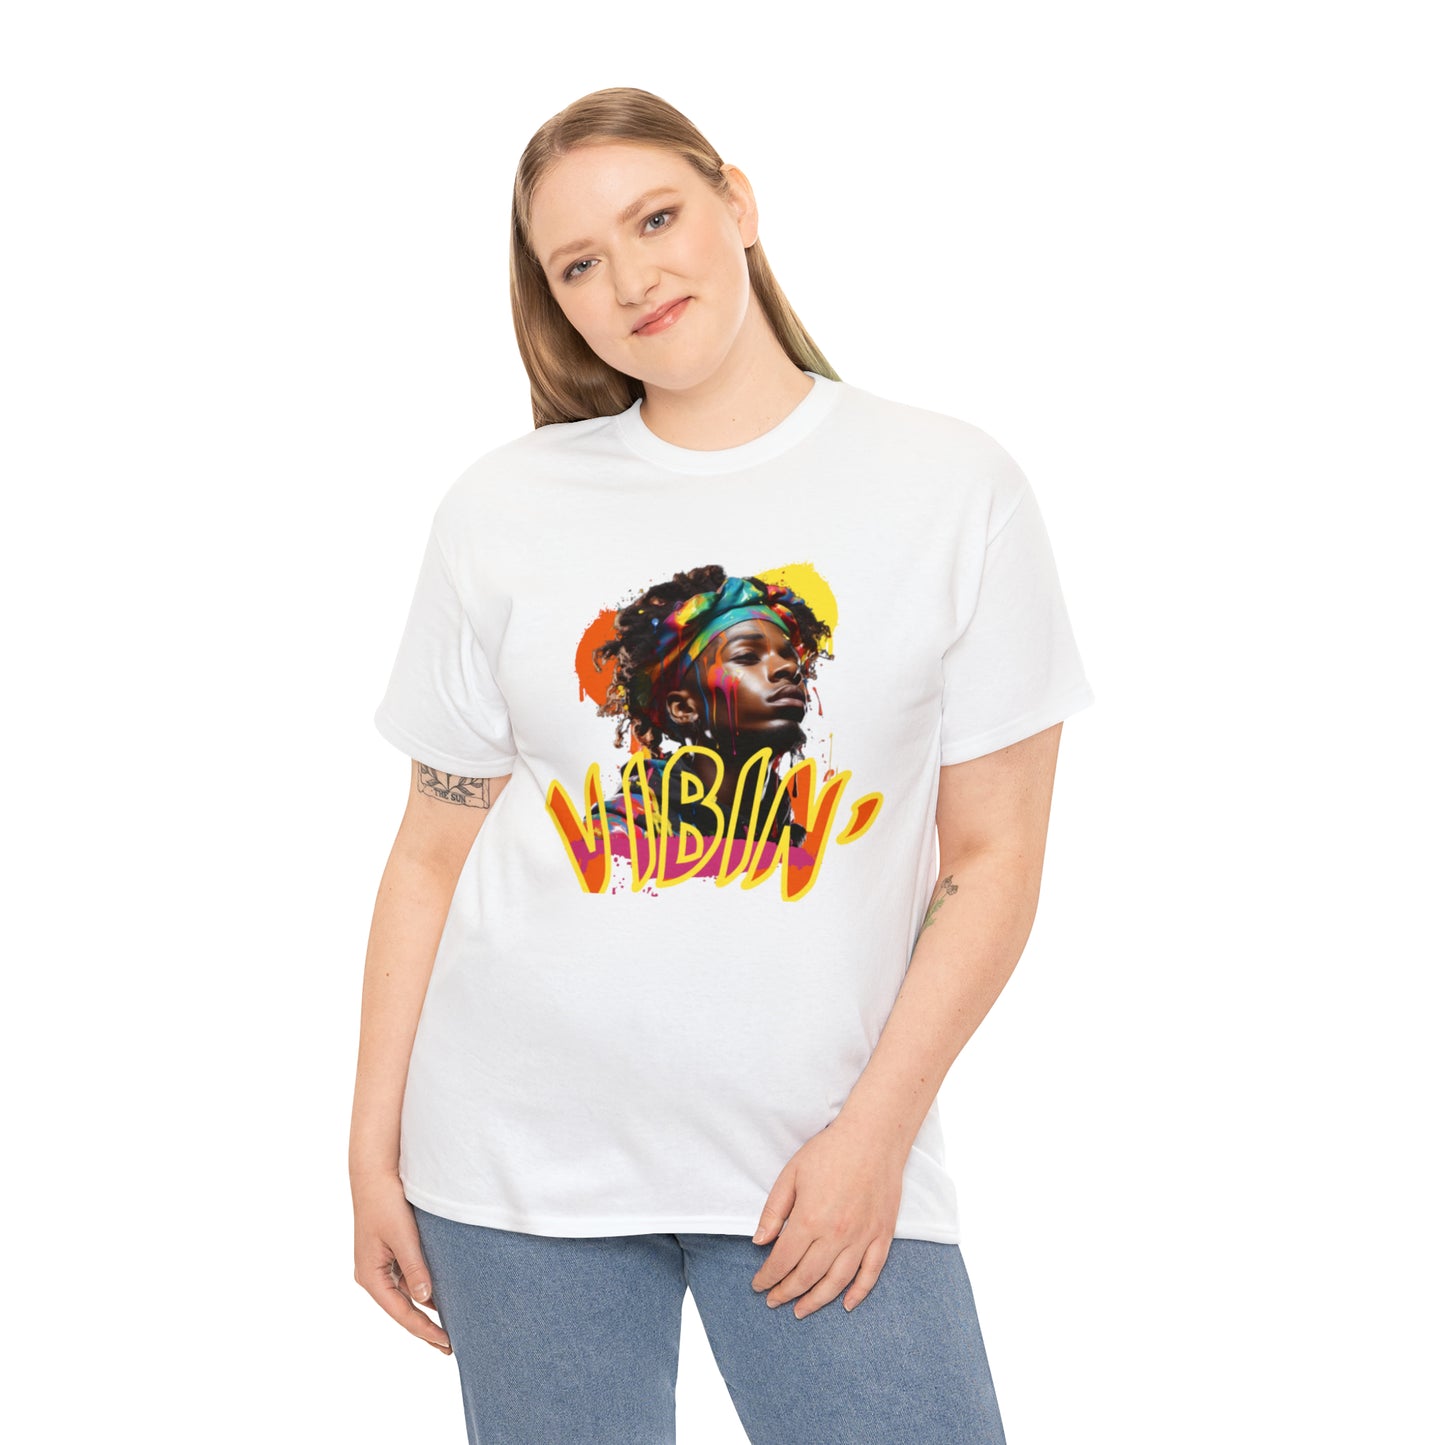 Vibin' T-Shirt